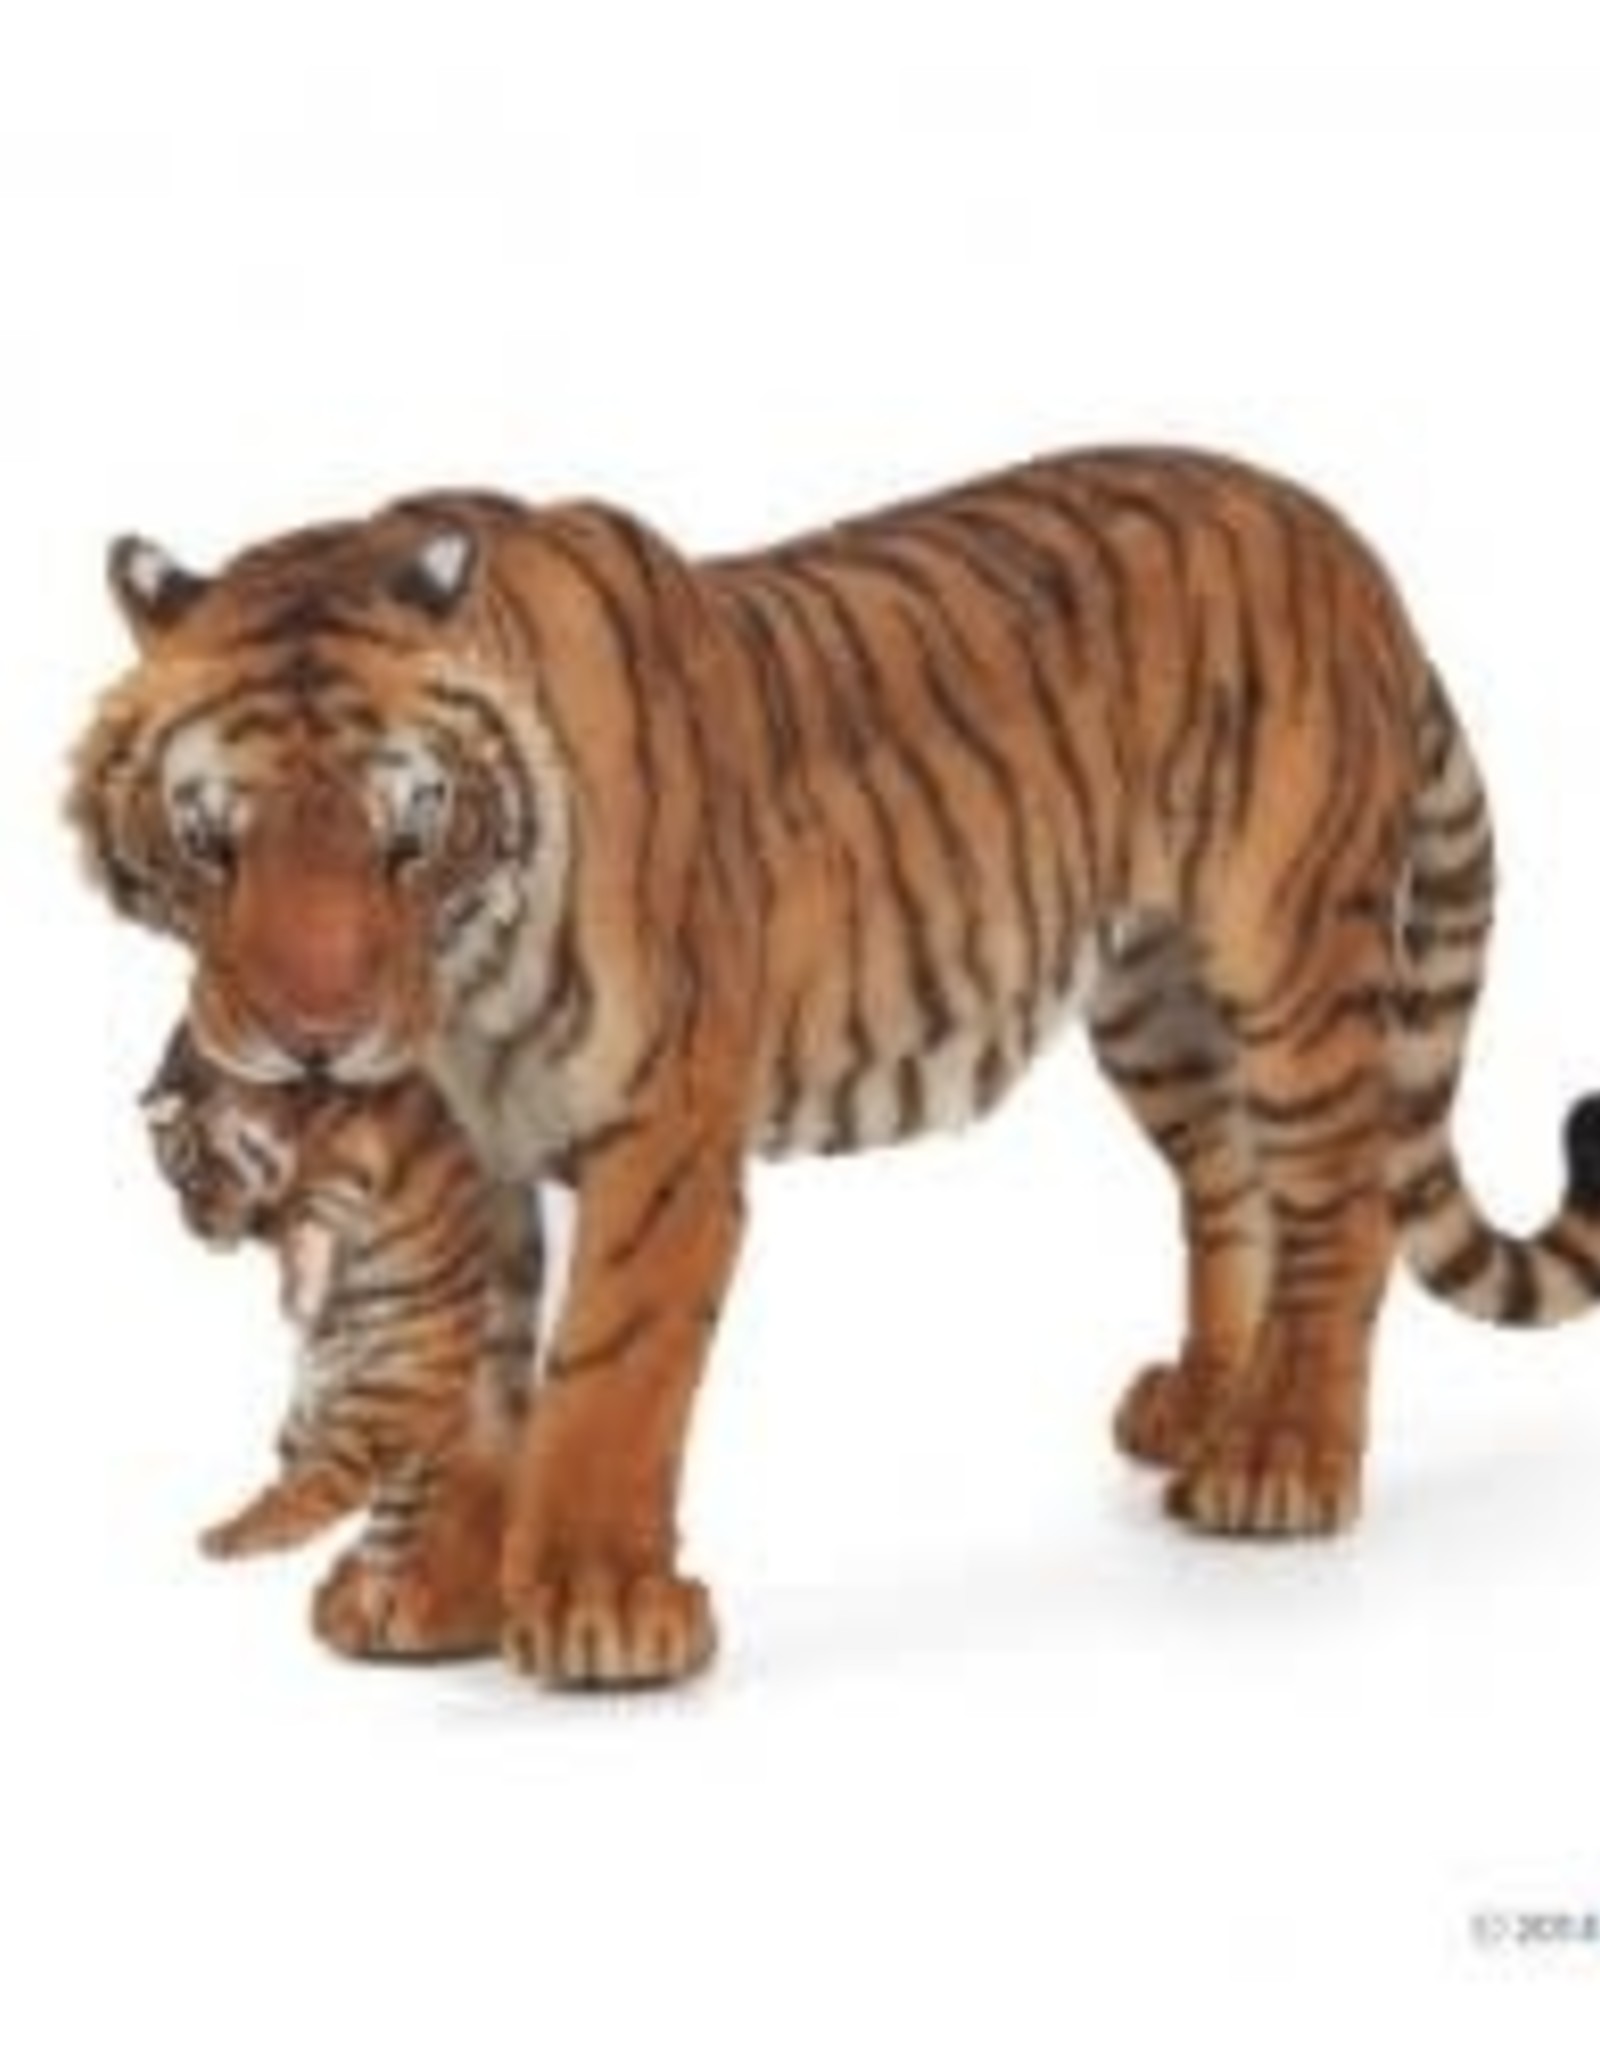 Papo Papo Tigress with cub